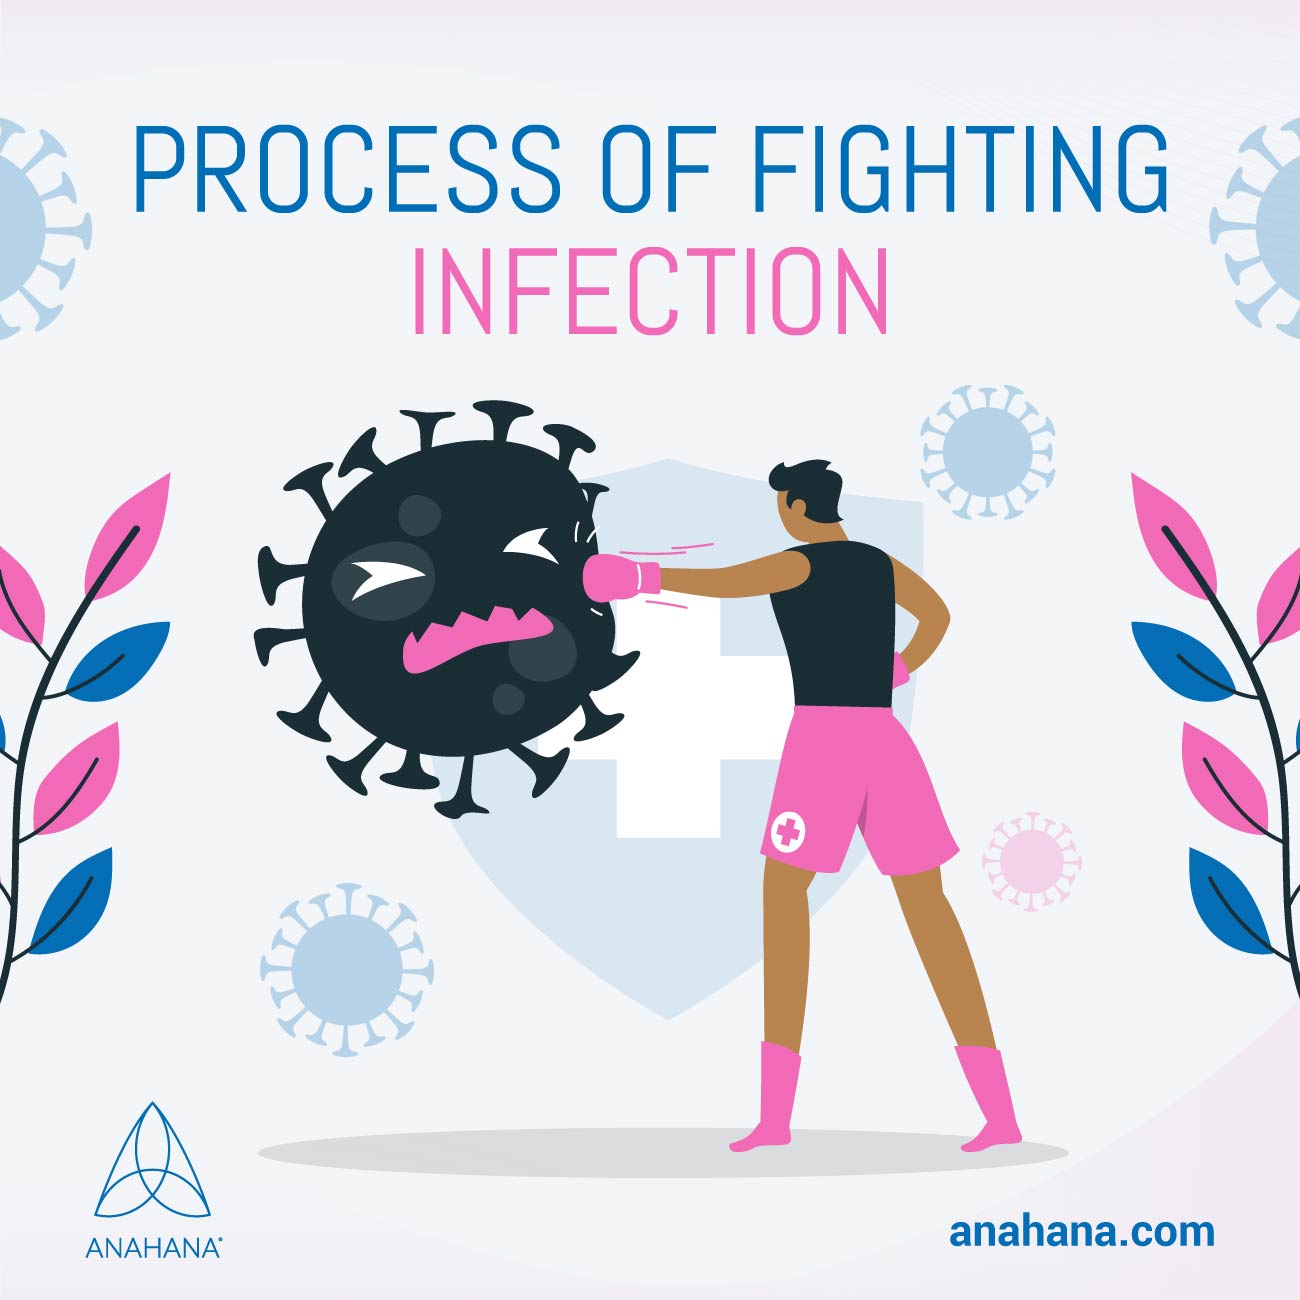 le processus de lutte contre une infection